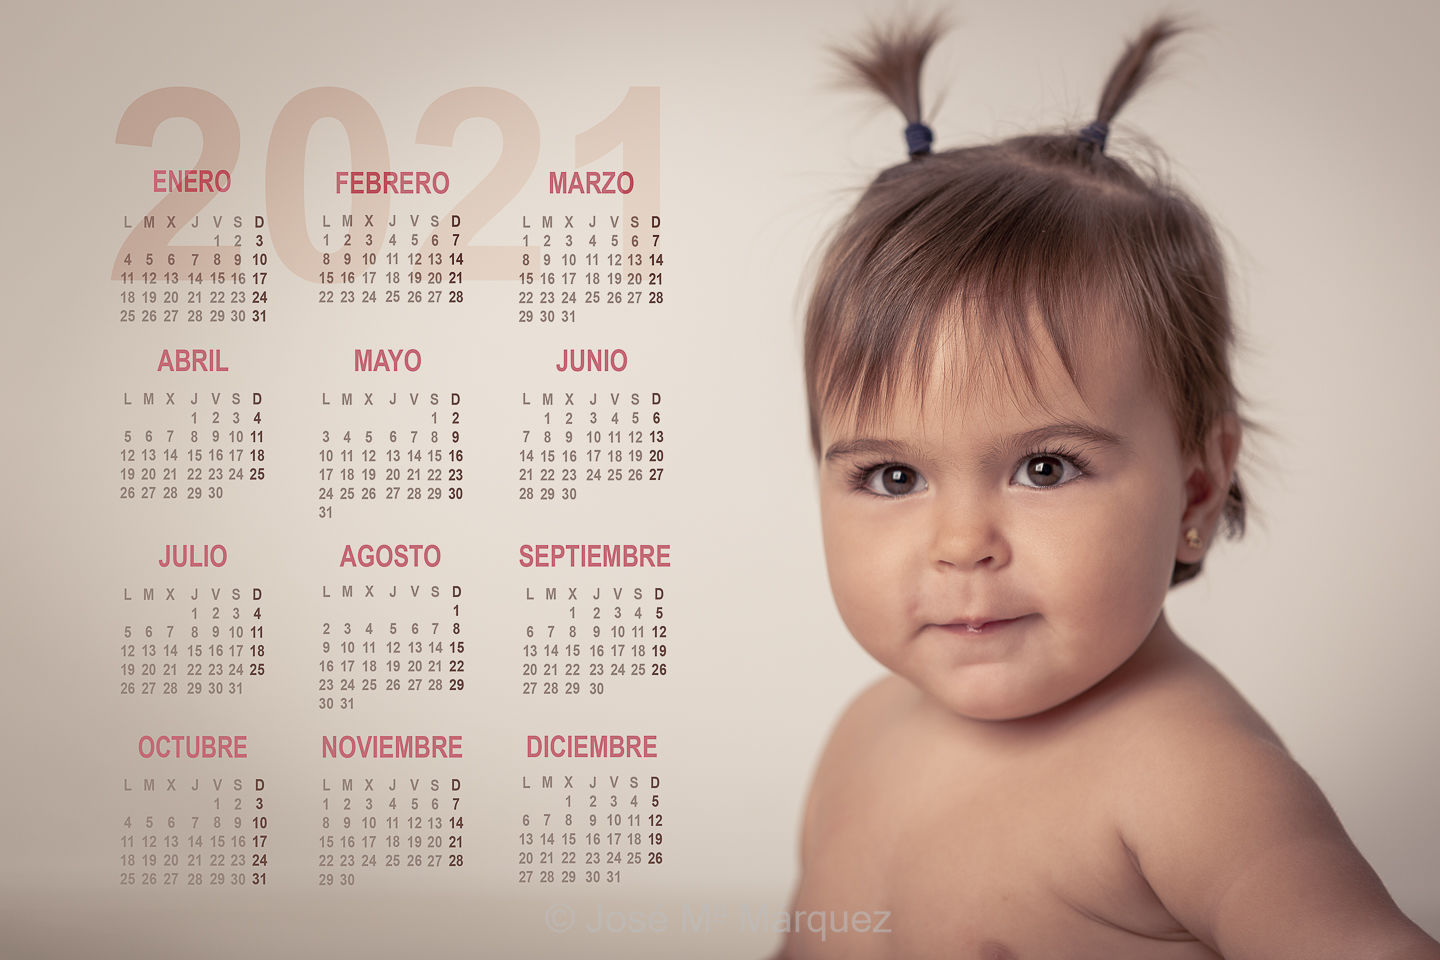 José María Márquez. Fotógrafo de Granada.  - calendario-2021-retrato-de-una-bebe-de-un-ano-fotografia-infantil-de-estudio-fotografo-de-ninos-granada.jpg